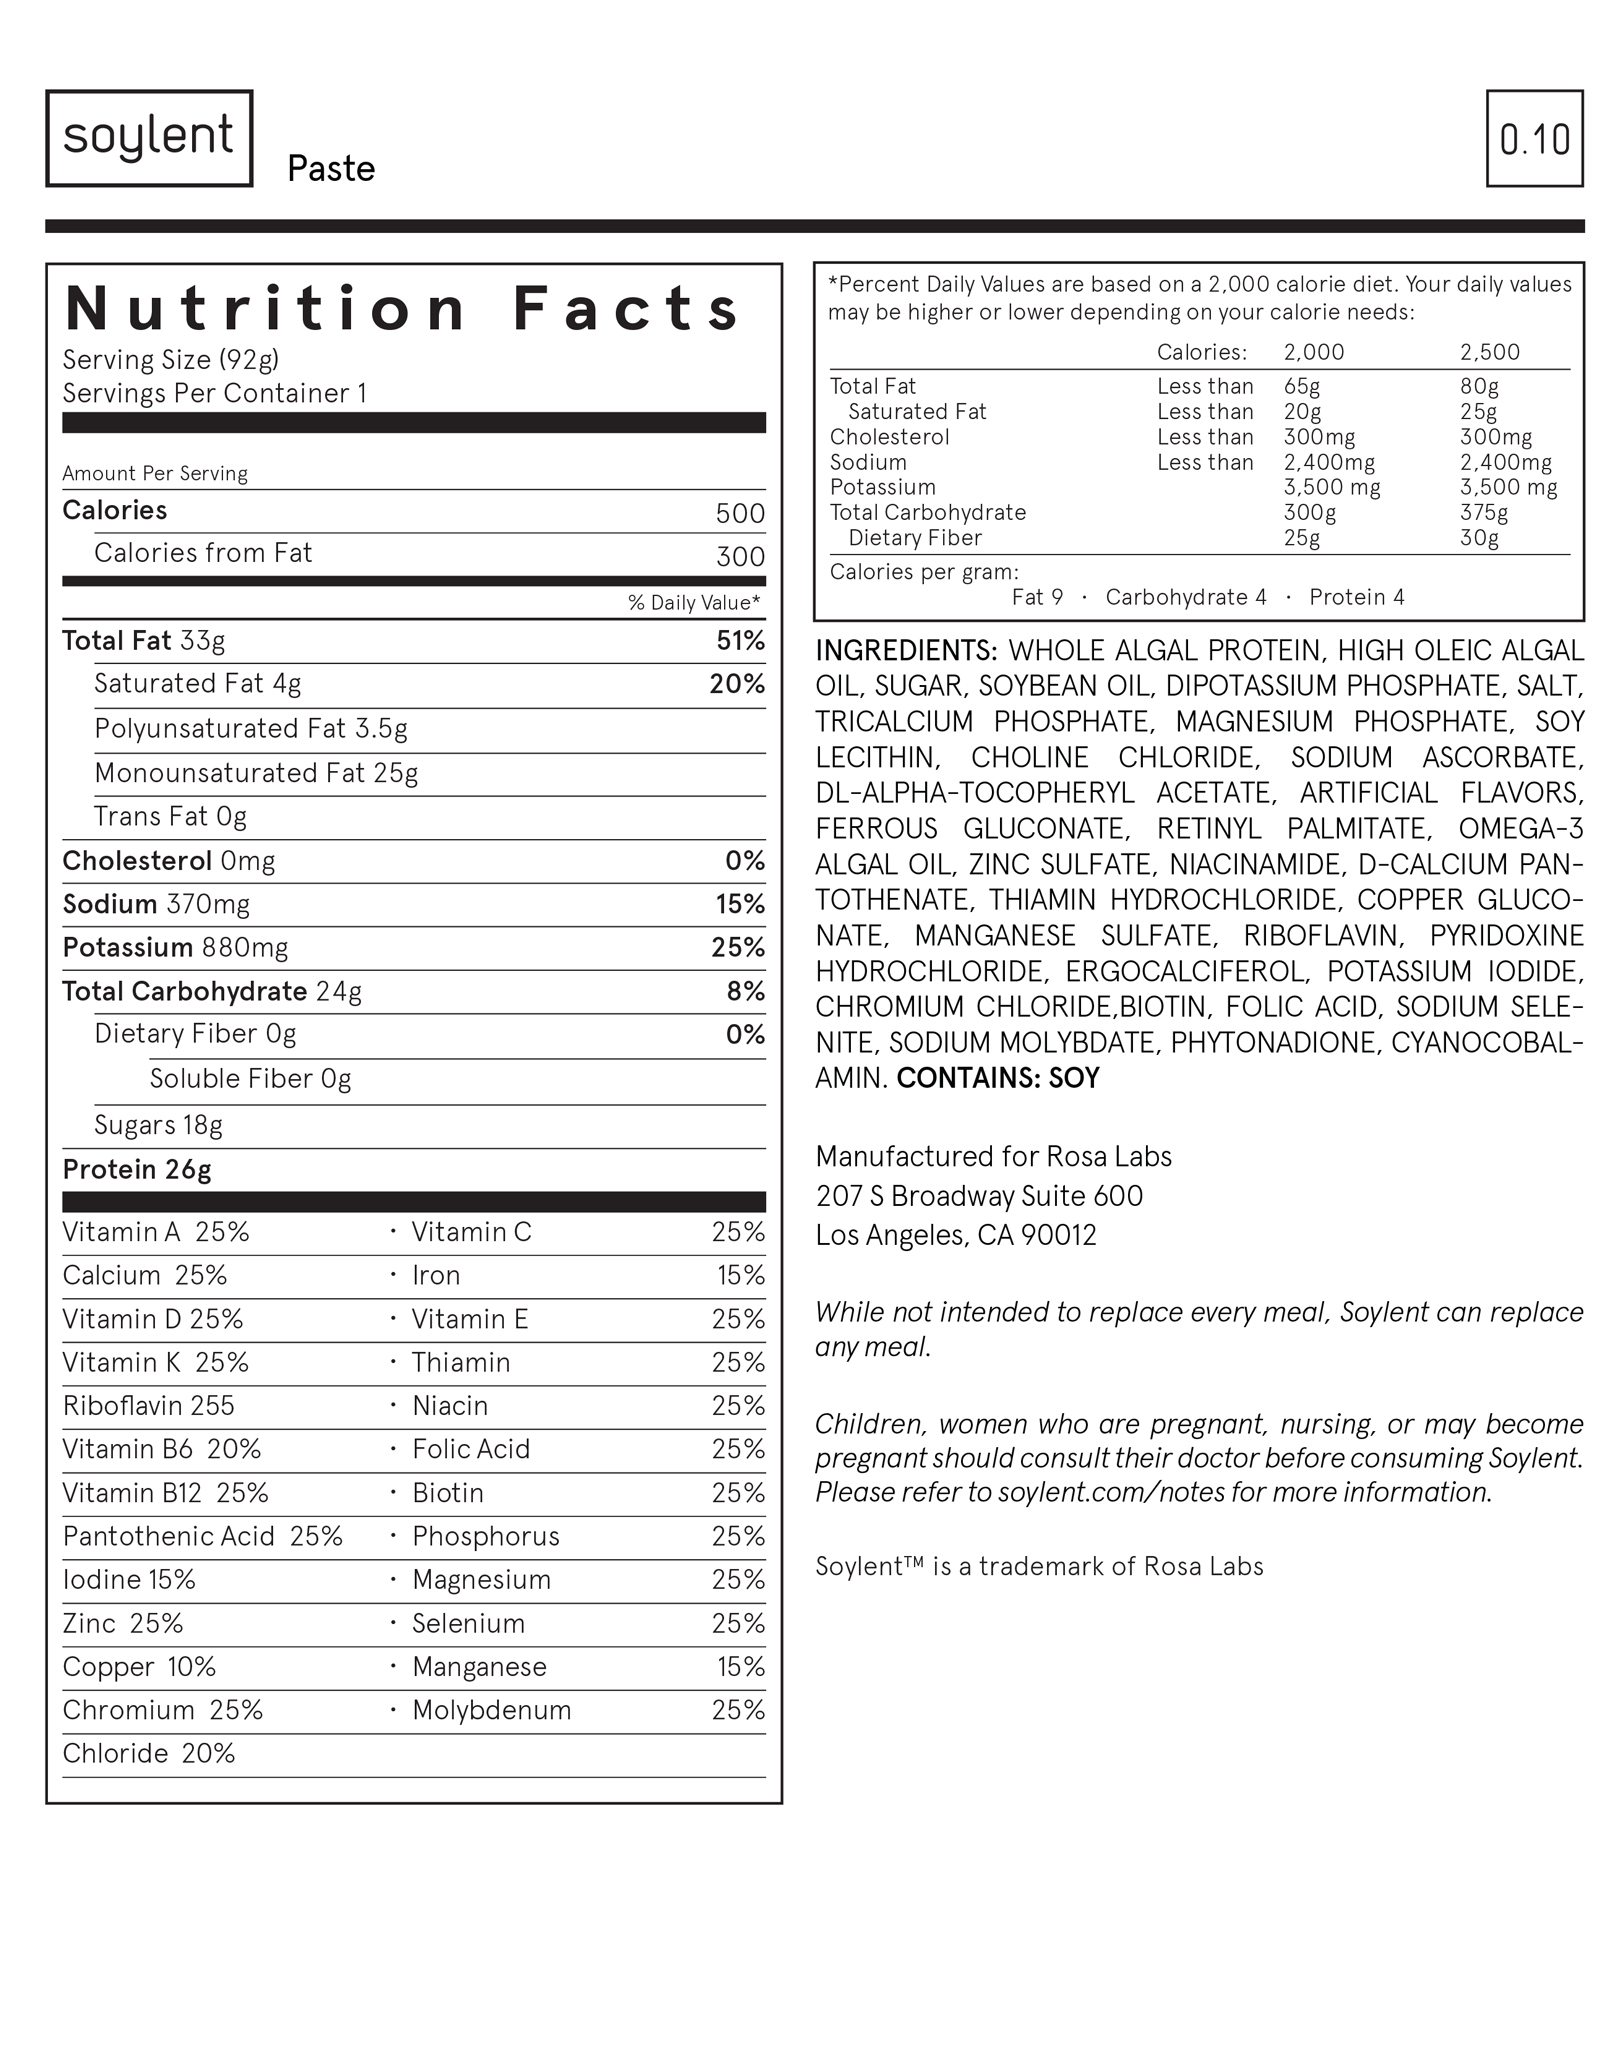 soylent-nutrition-facts-paste